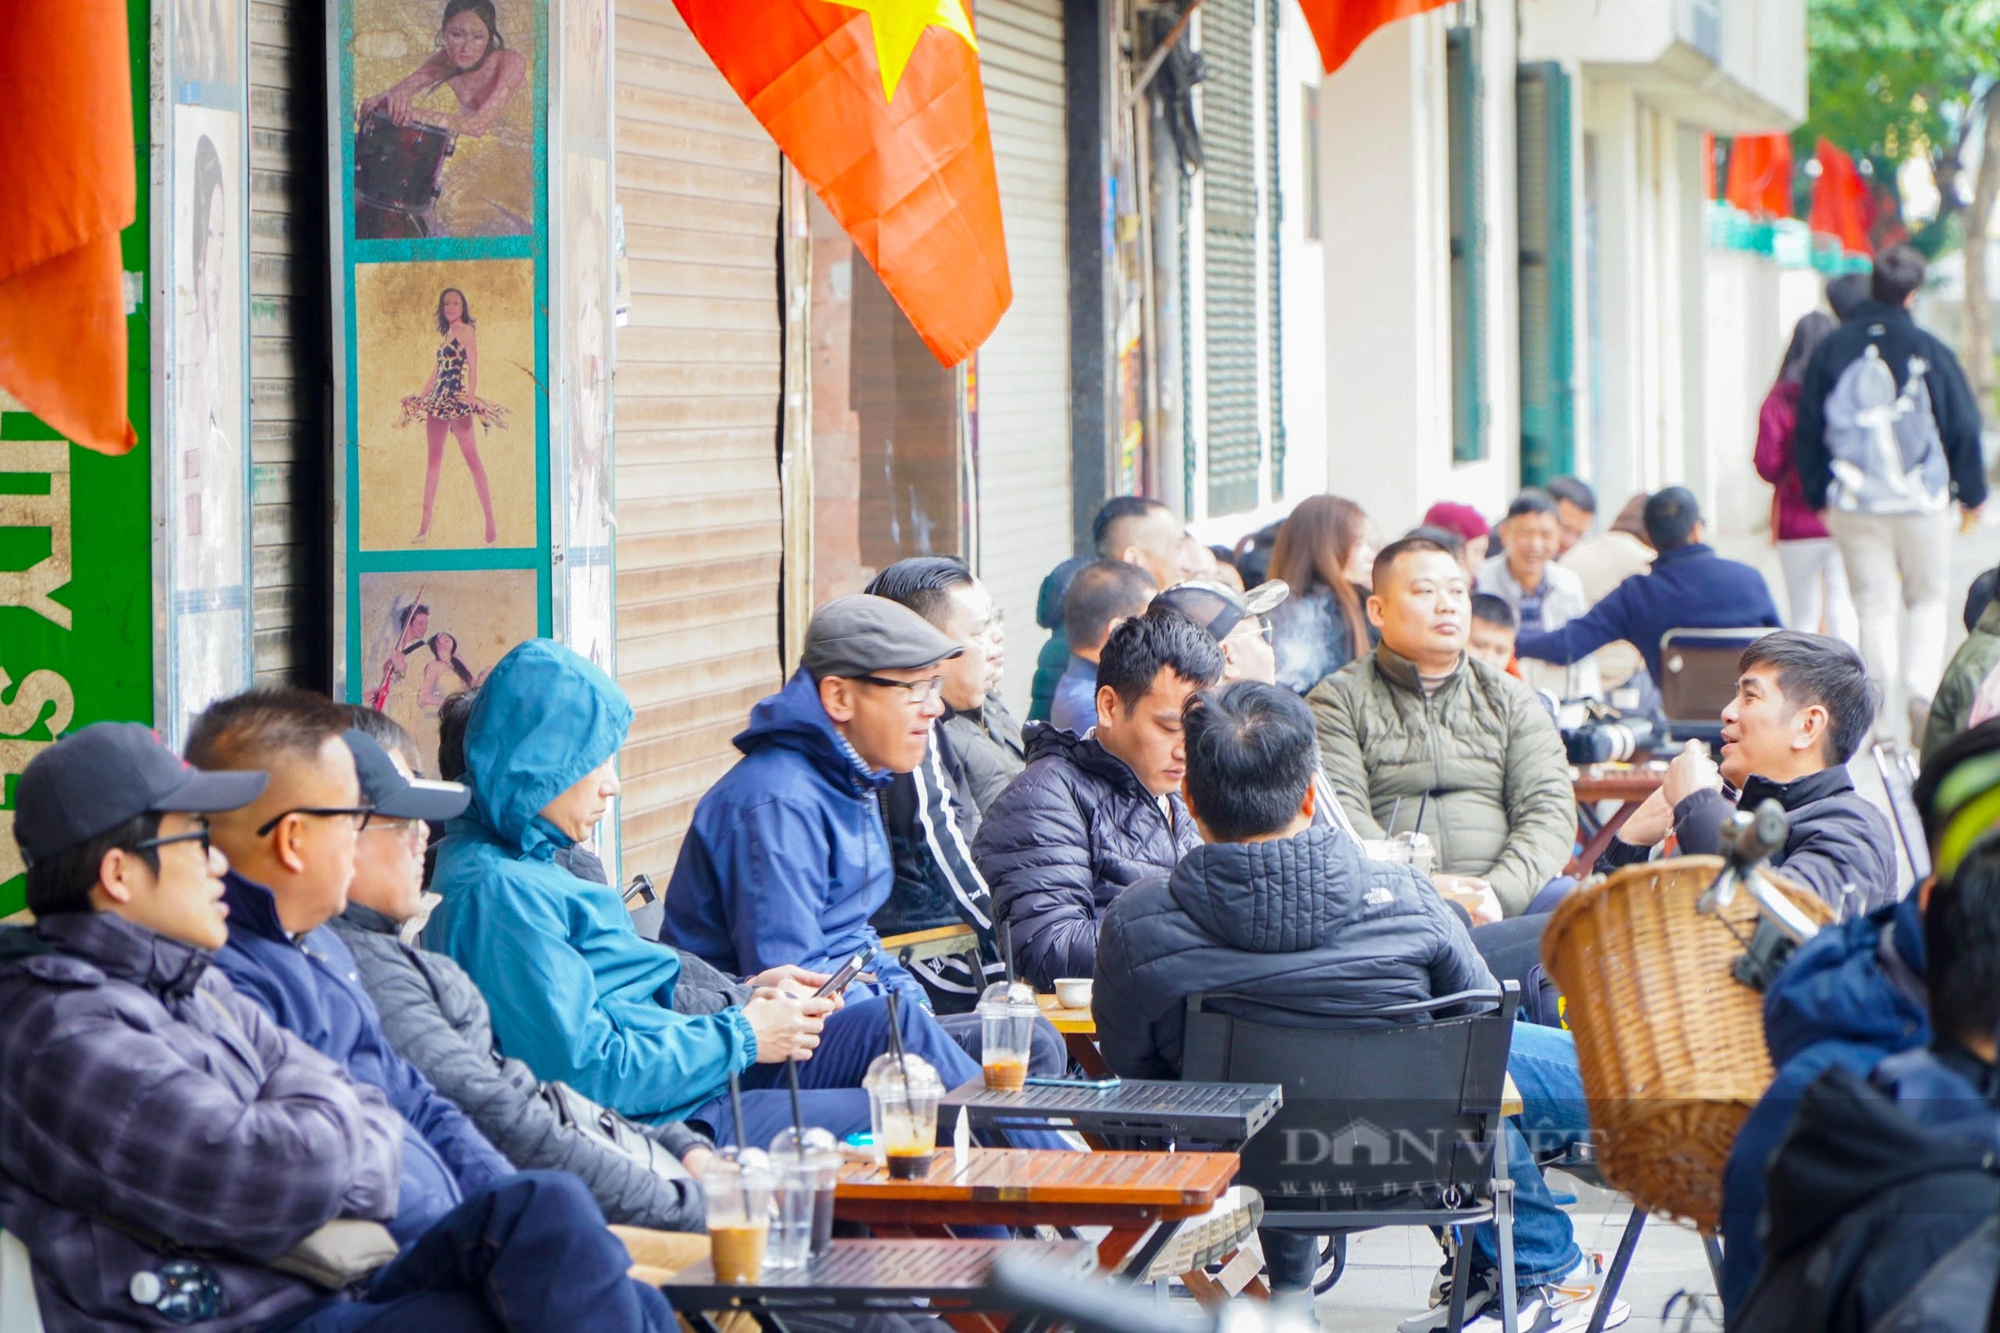 30 Tết đường phố Hà Nội thông thoáng, người dân thảnh thơi uống cà phê- Ảnh 9.